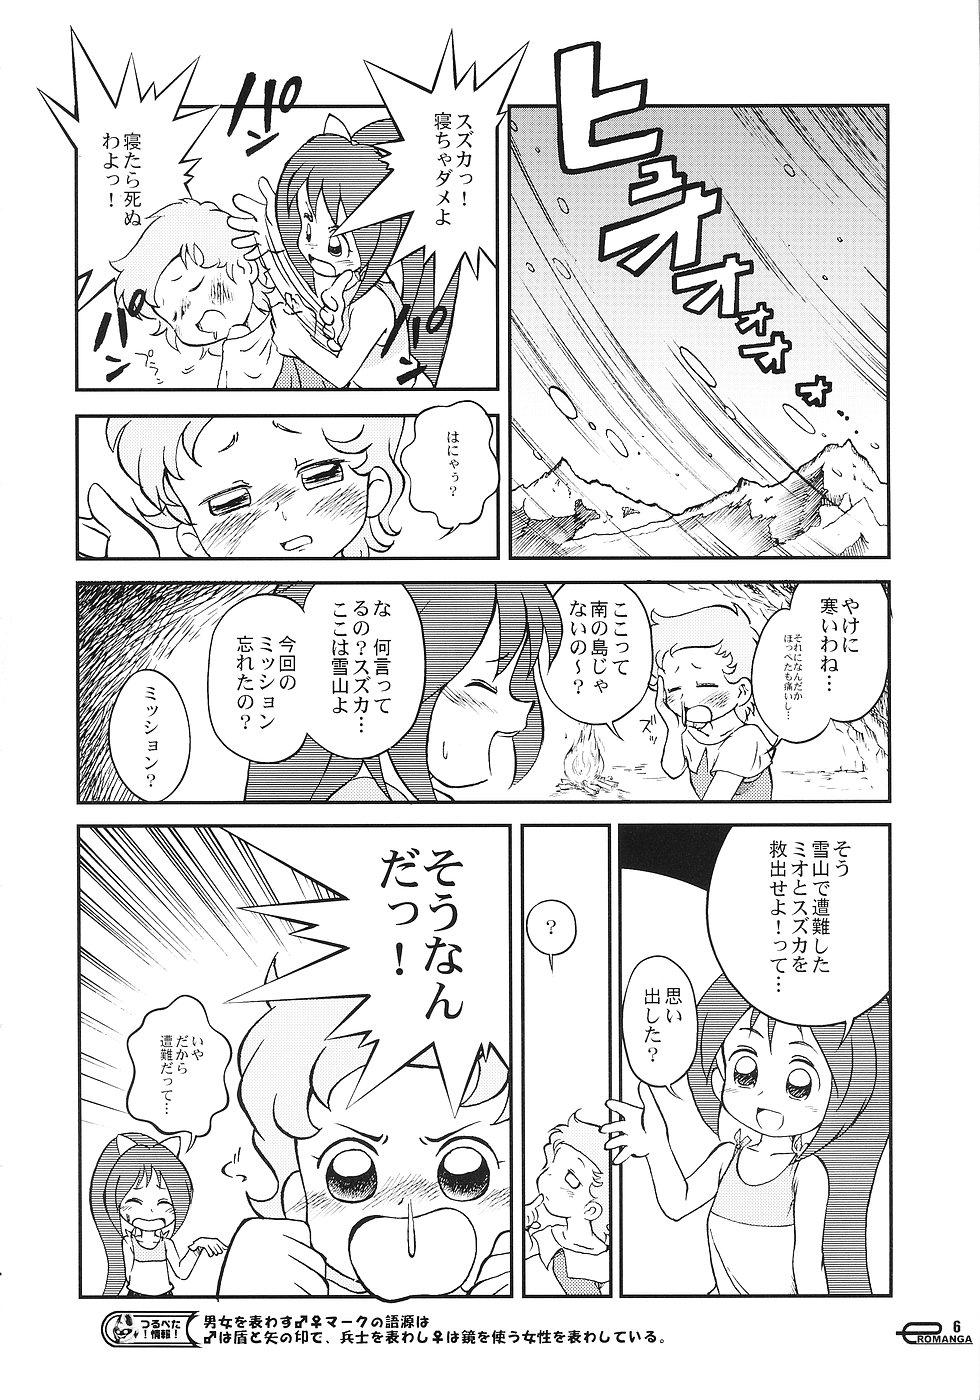 Manga Science 3 - Sou Nanda! 4